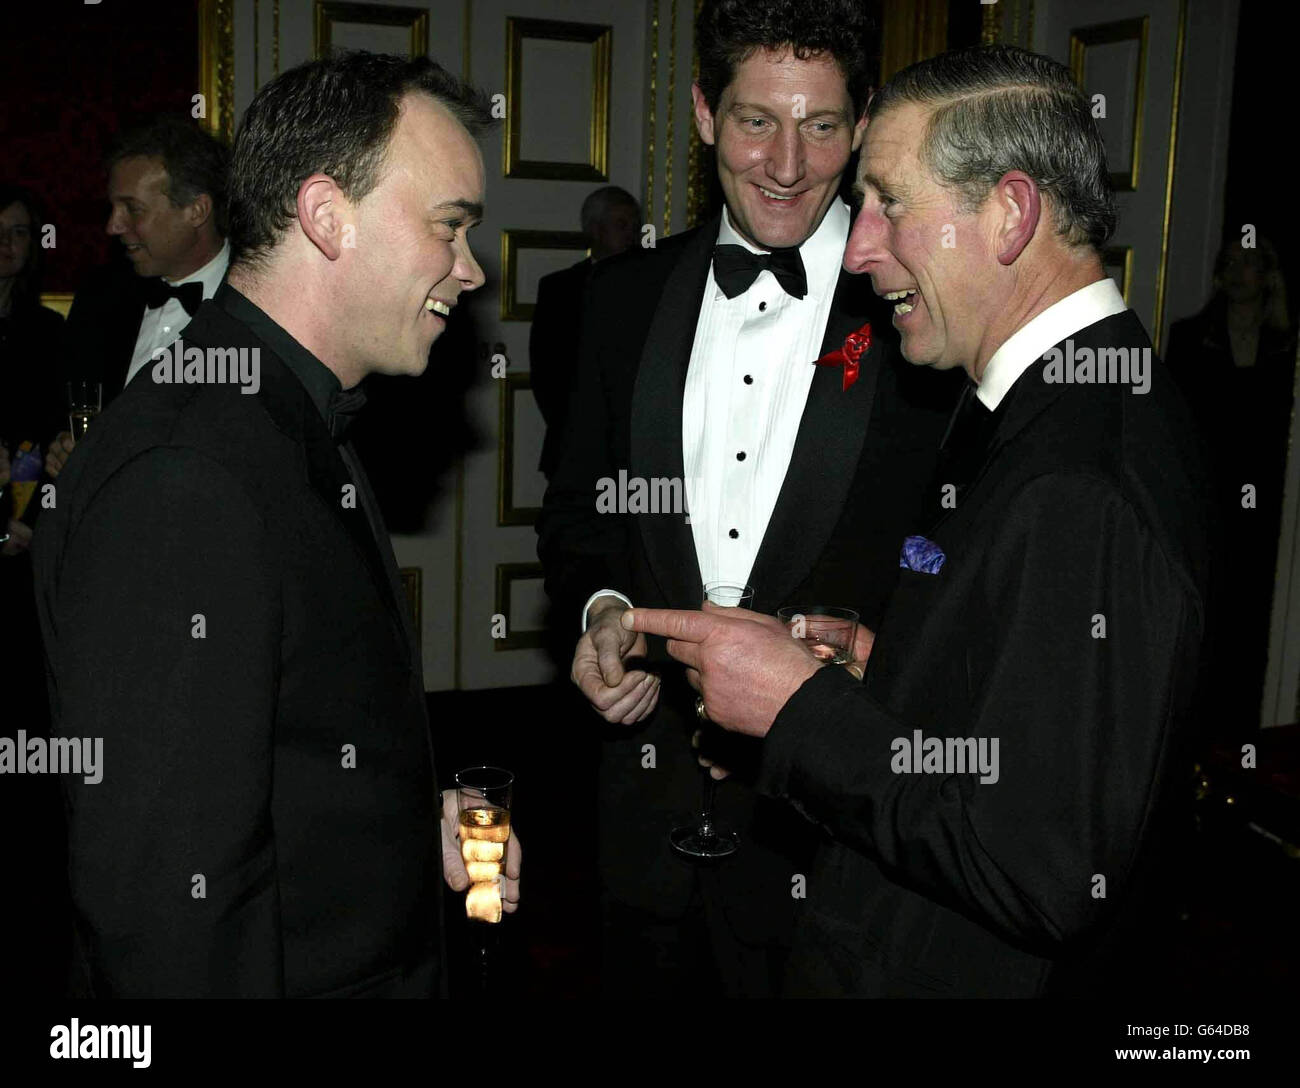 Le Prince de Galles (à droite) qui a accueilli le 20e dîner annuel des prix Terrence Higgins Trust, dans ses appartements d'état au Palais St James, rencontre l'acteur Eastenders Todd Carty. Banque D'Images